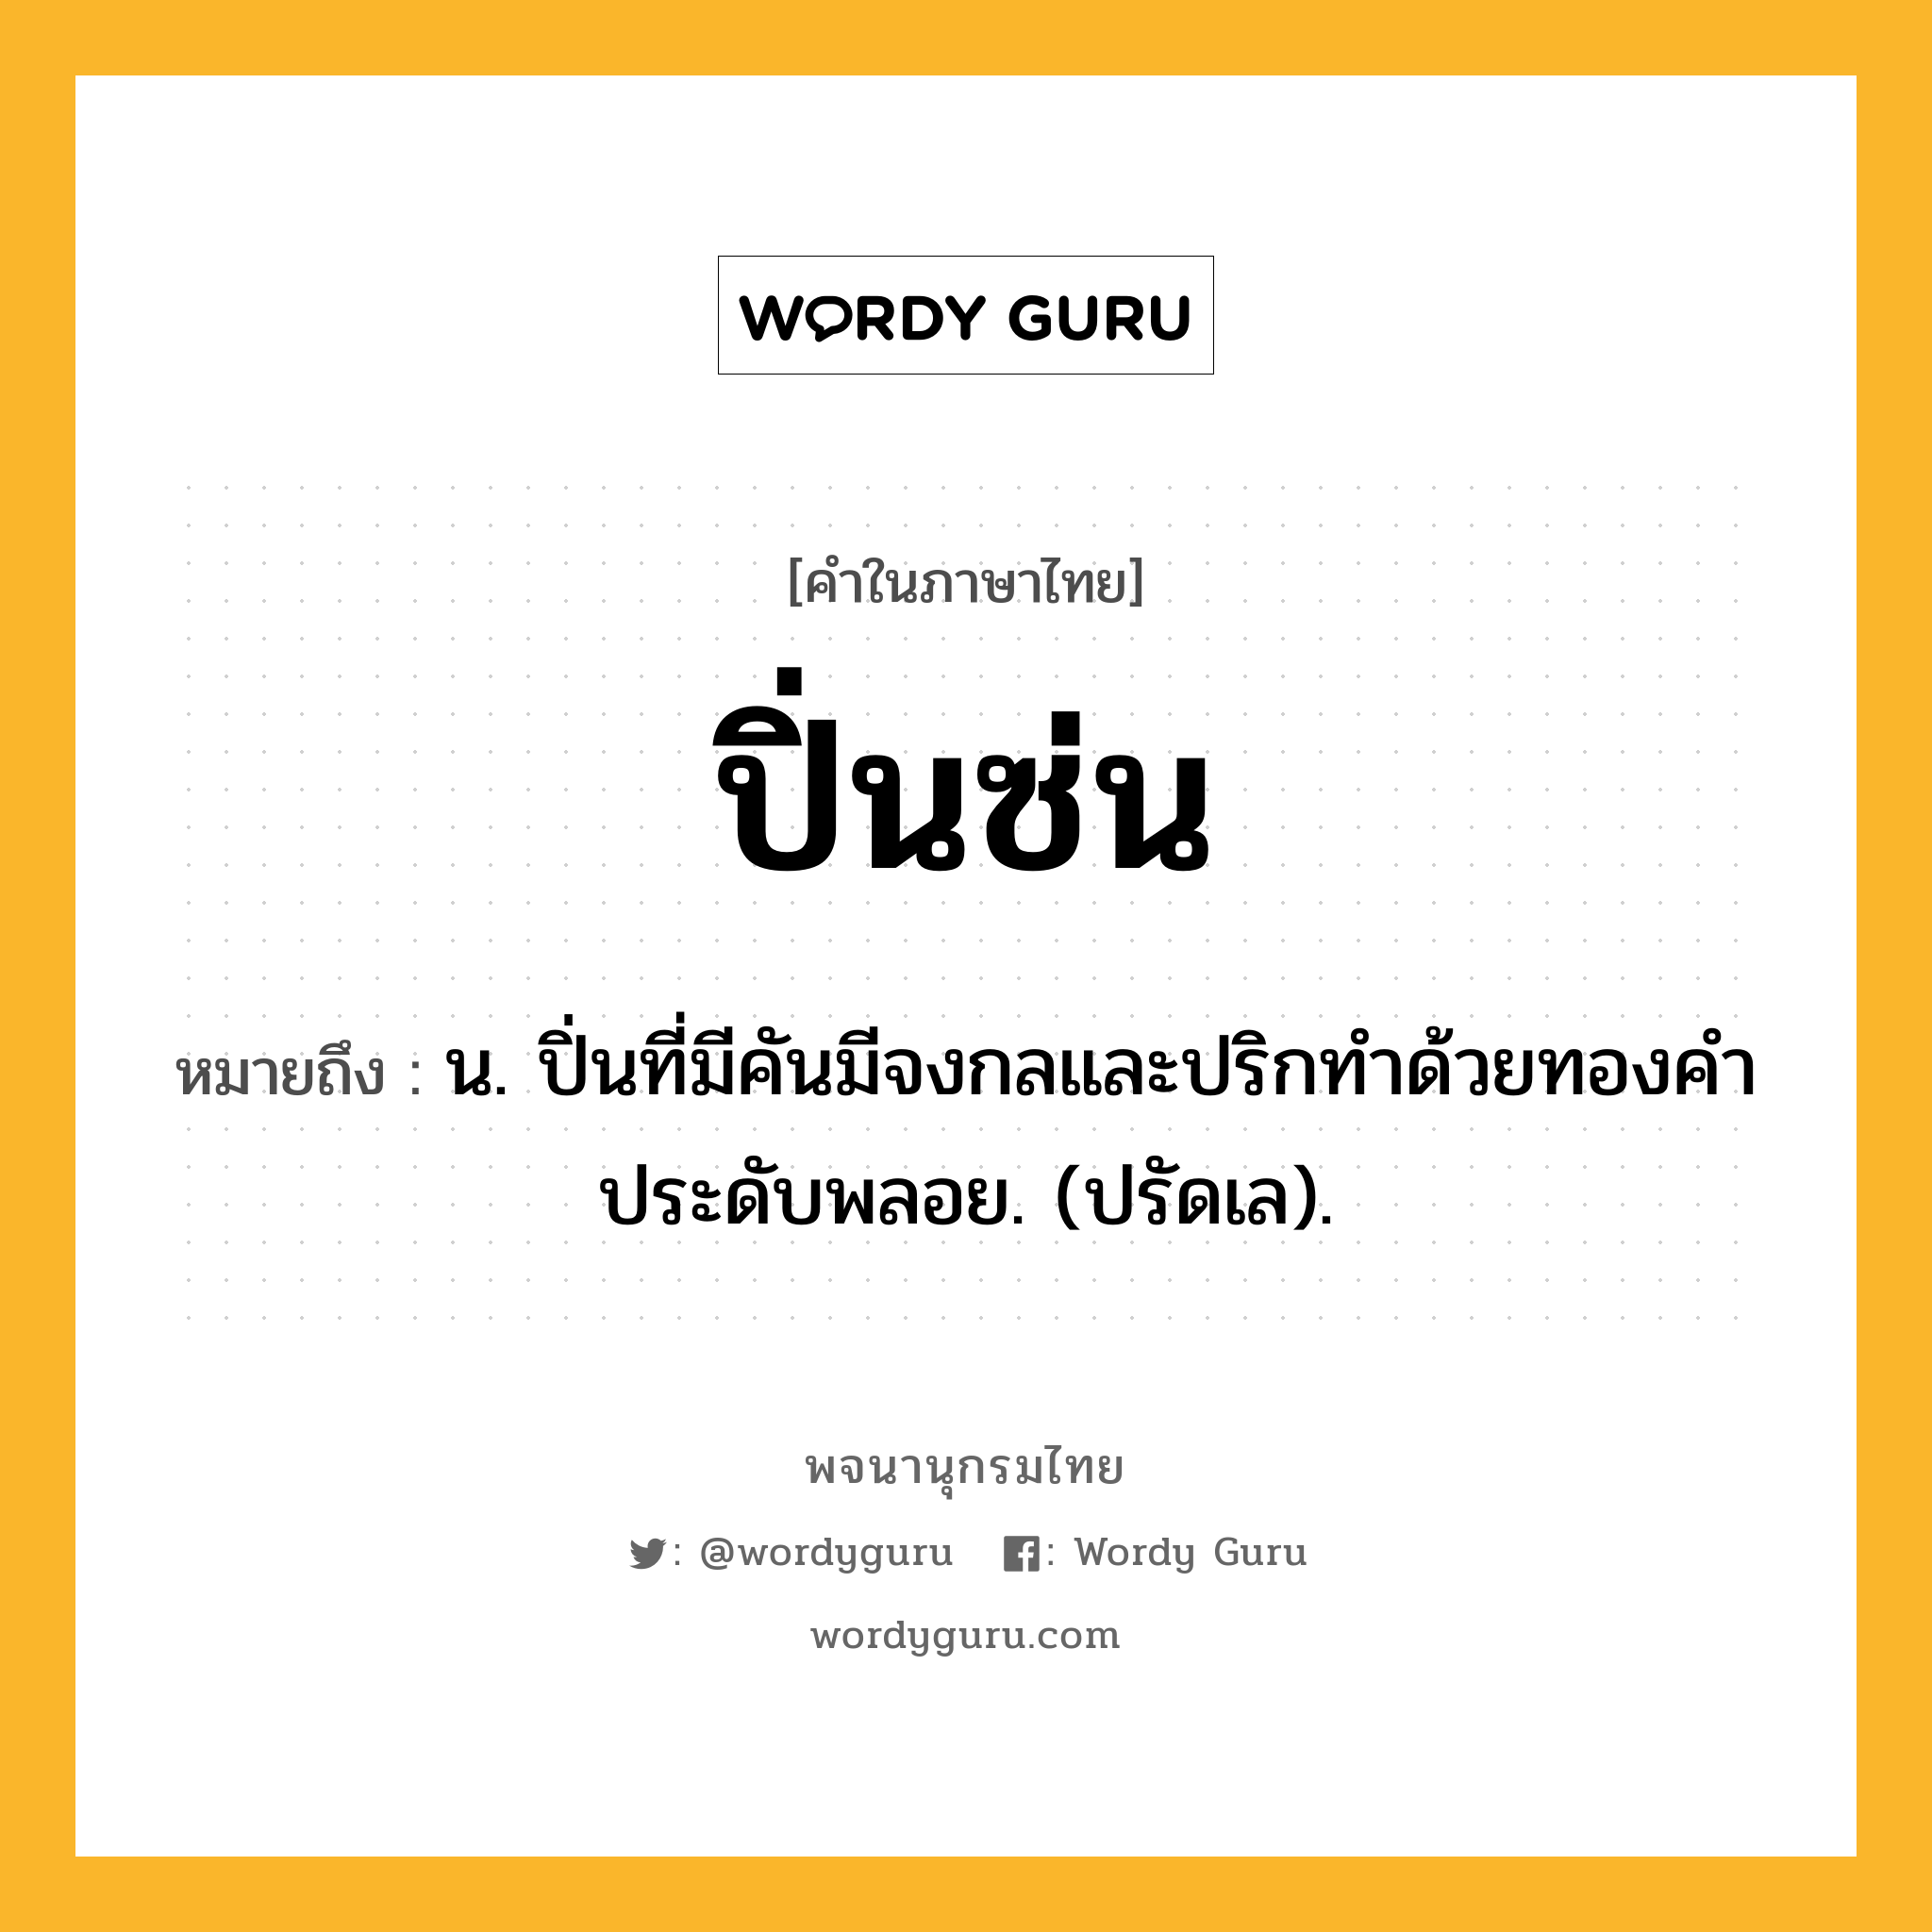 ปิ่นซ่น ความหมาย หมายถึงอะไร?, คำในภาษาไทย ปิ่นซ่น หมายถึง น. ปิ่นที่มีคันมีจงกลและปริกทําด้วยทองคําประดับพลอย. (ปรัดเล).